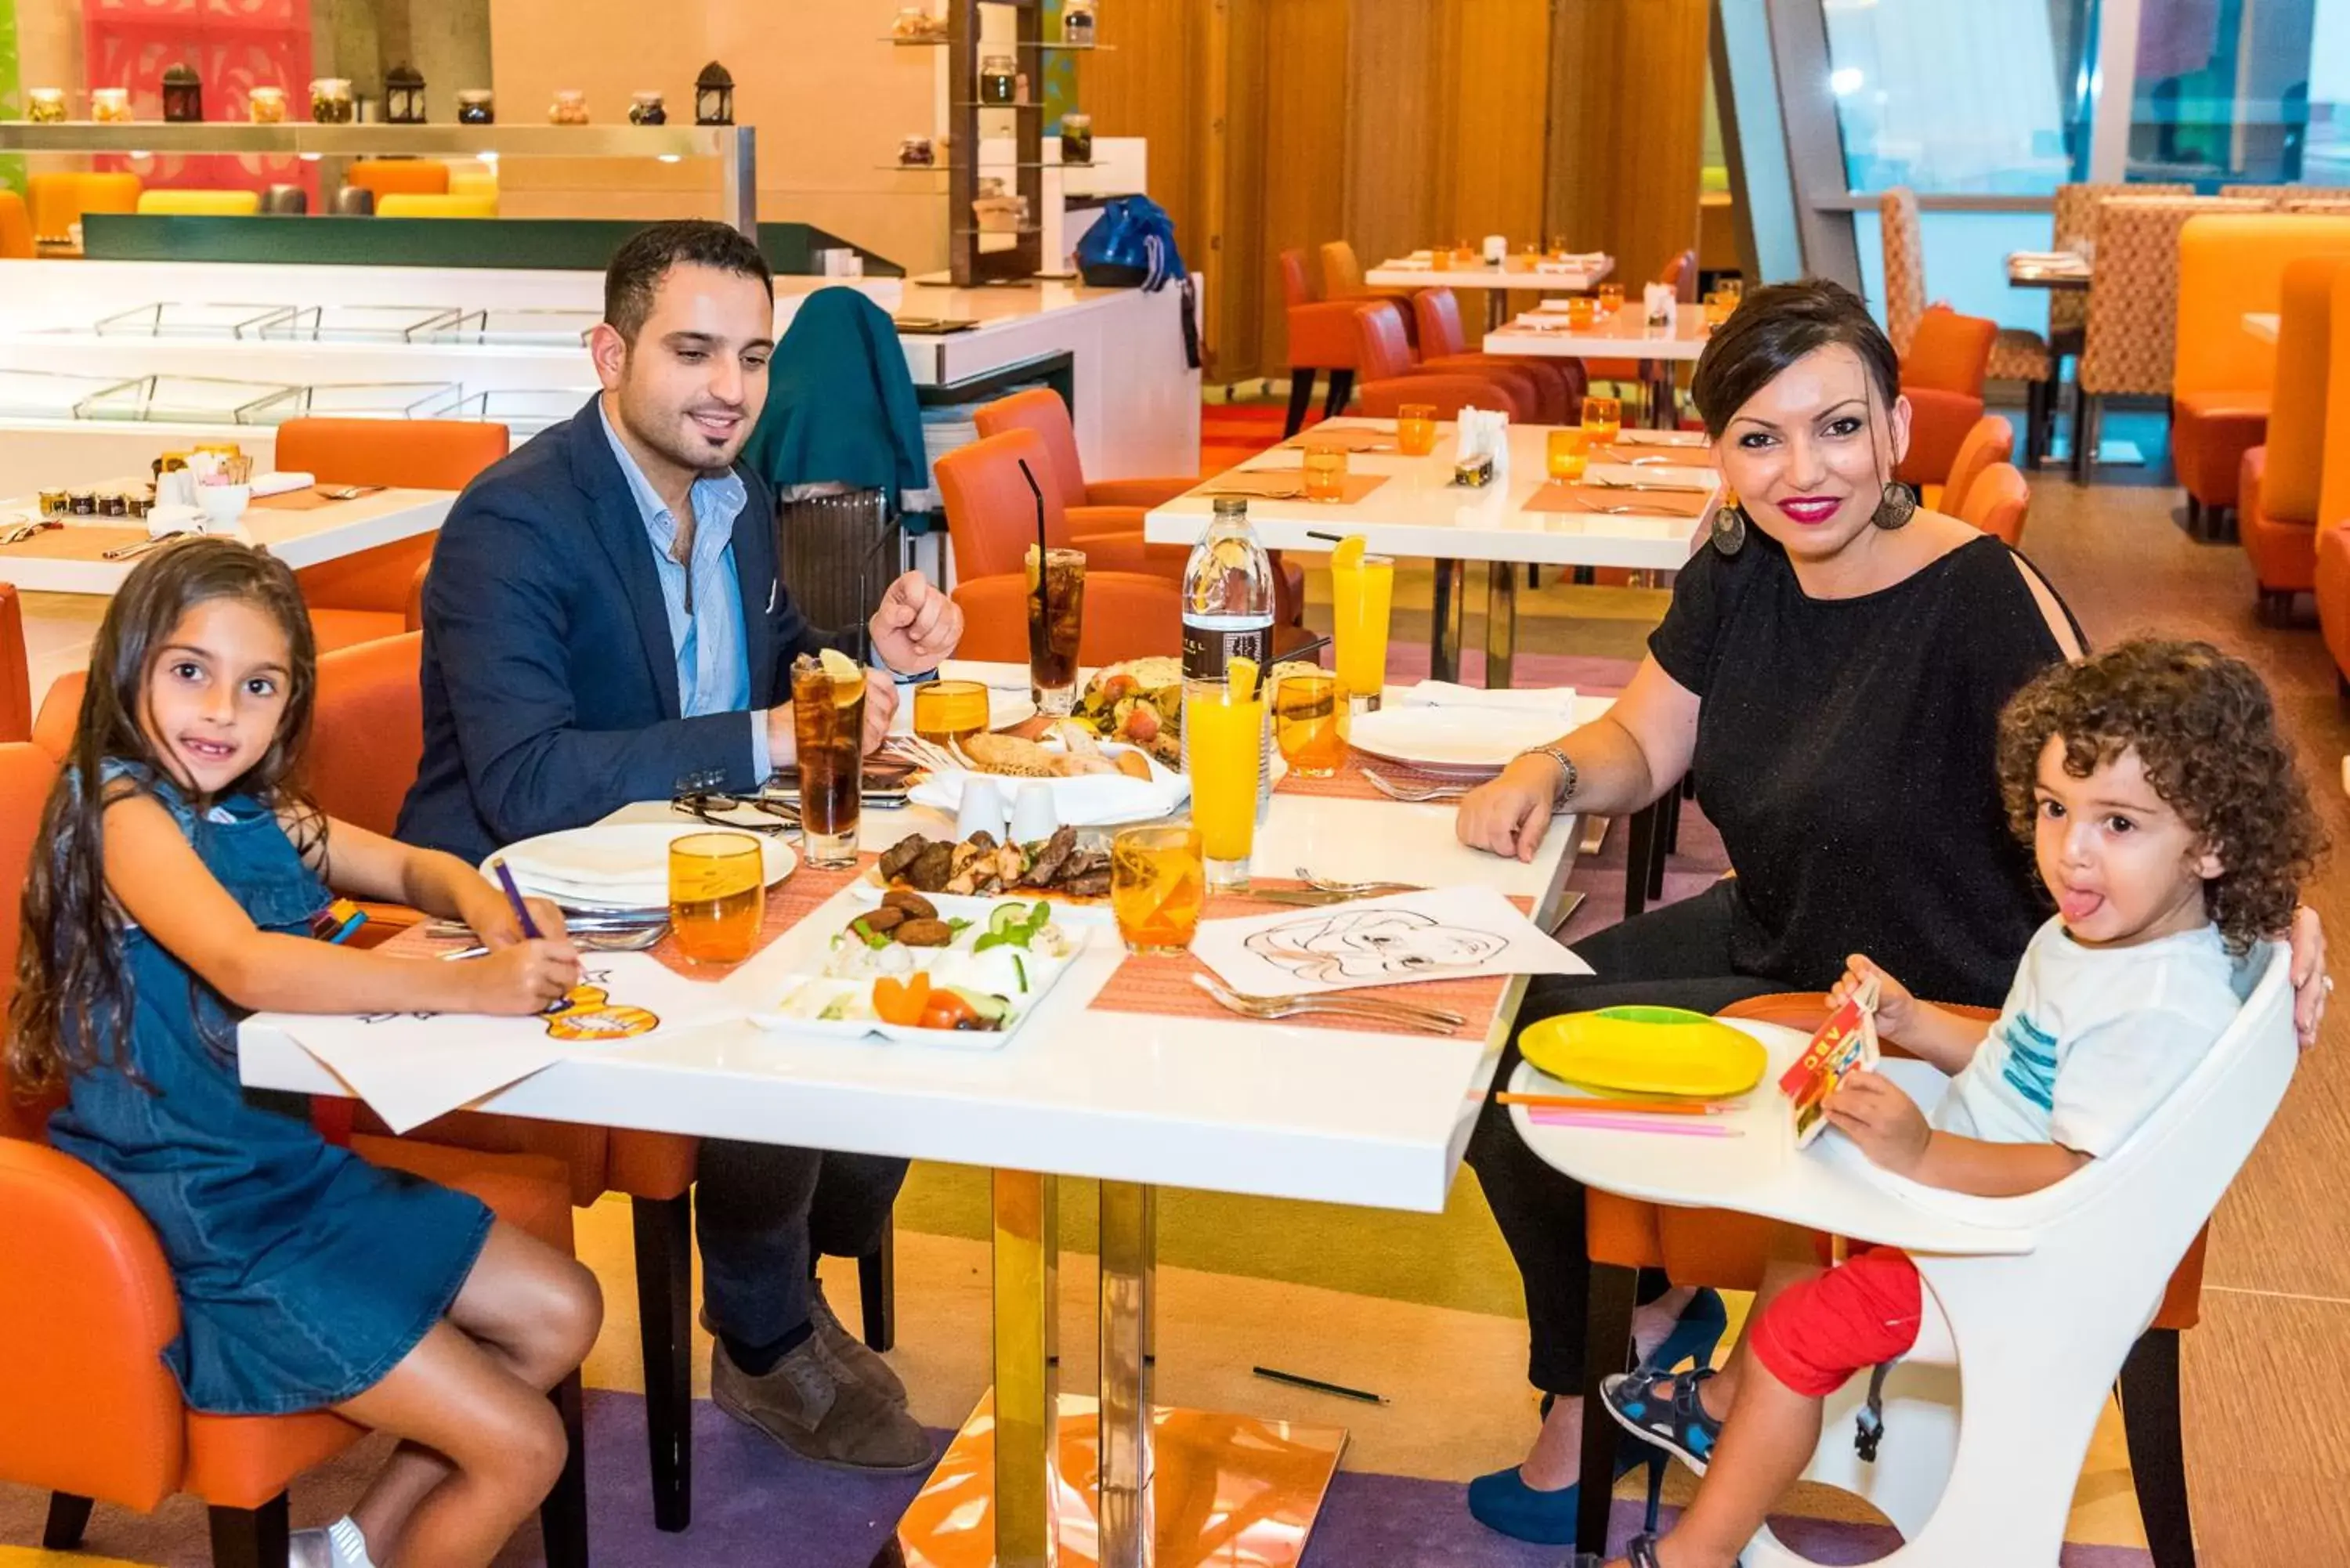 Restaurant/places to eat in Sofitel Dubai Downtown